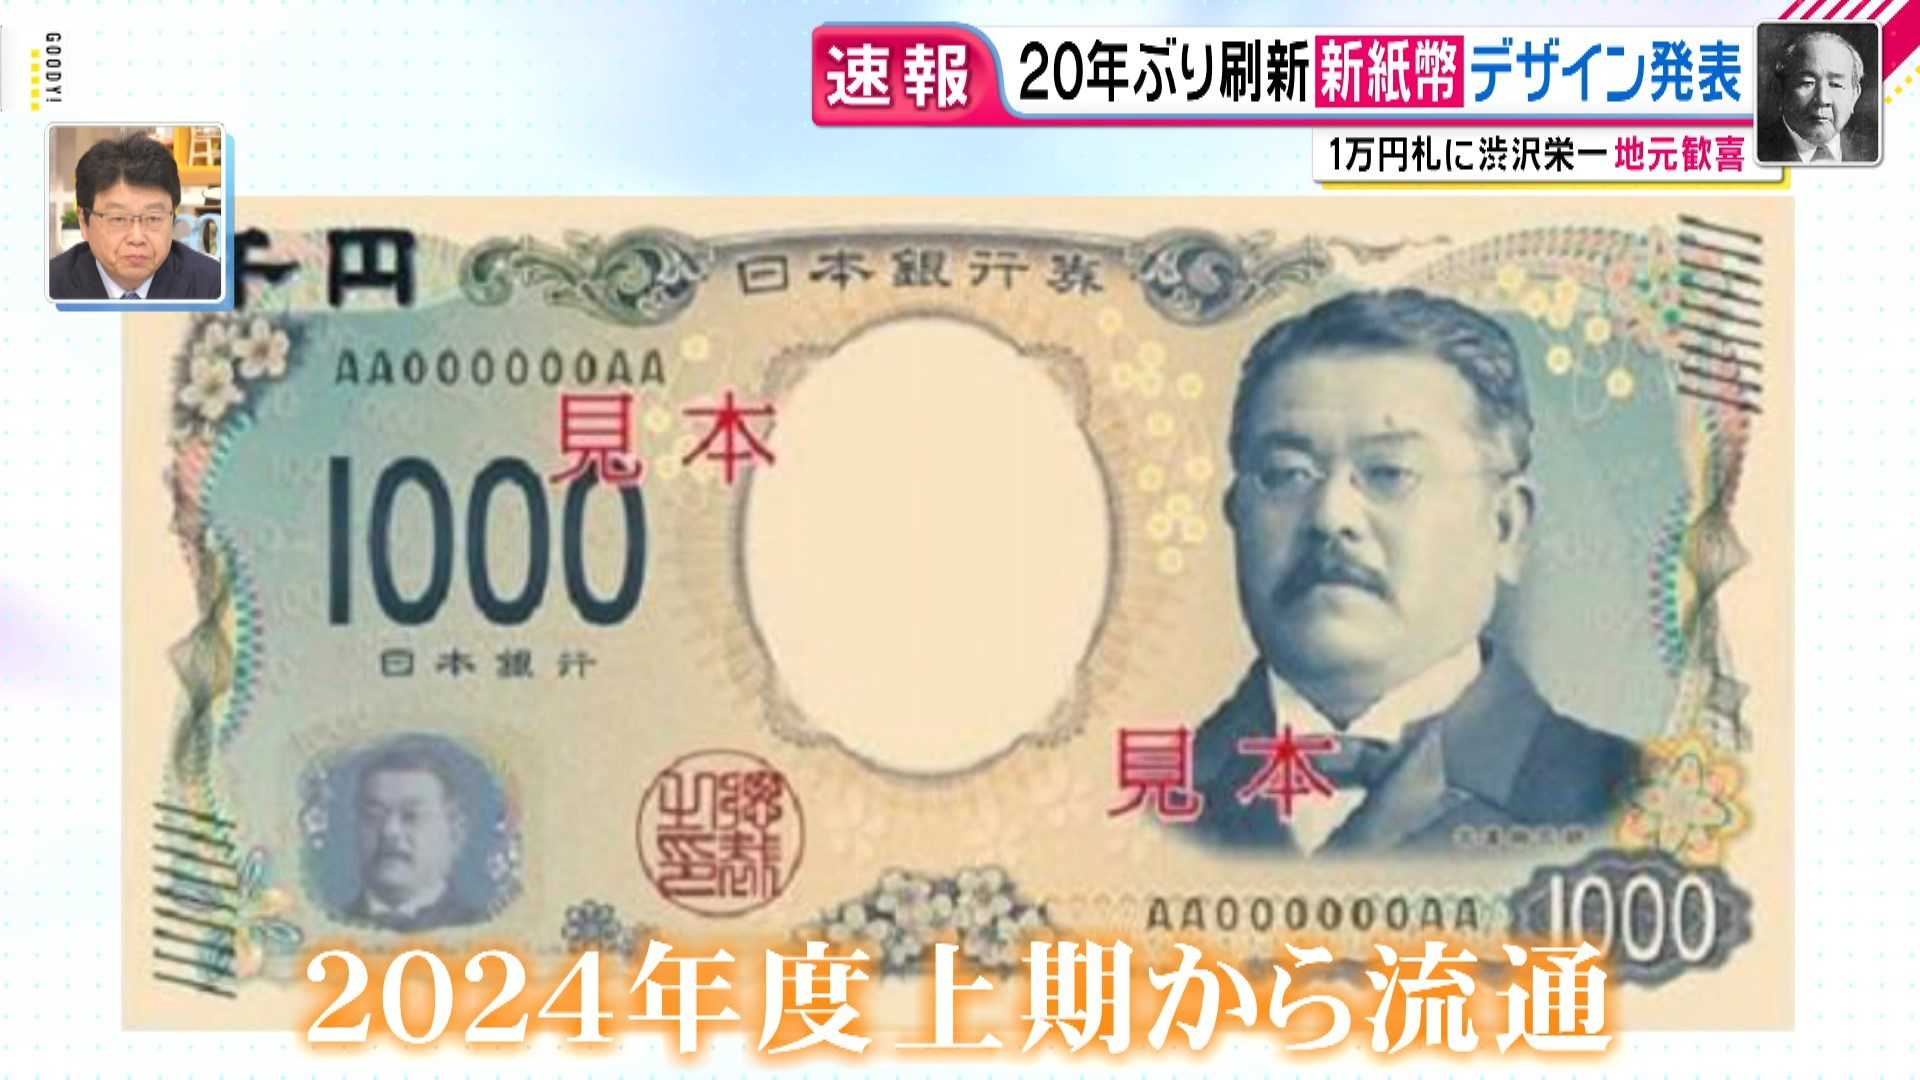 20年ぶりに紙幣刷新へ 一万円札の新しい顔 渋沢栄一は過去に 落選 し